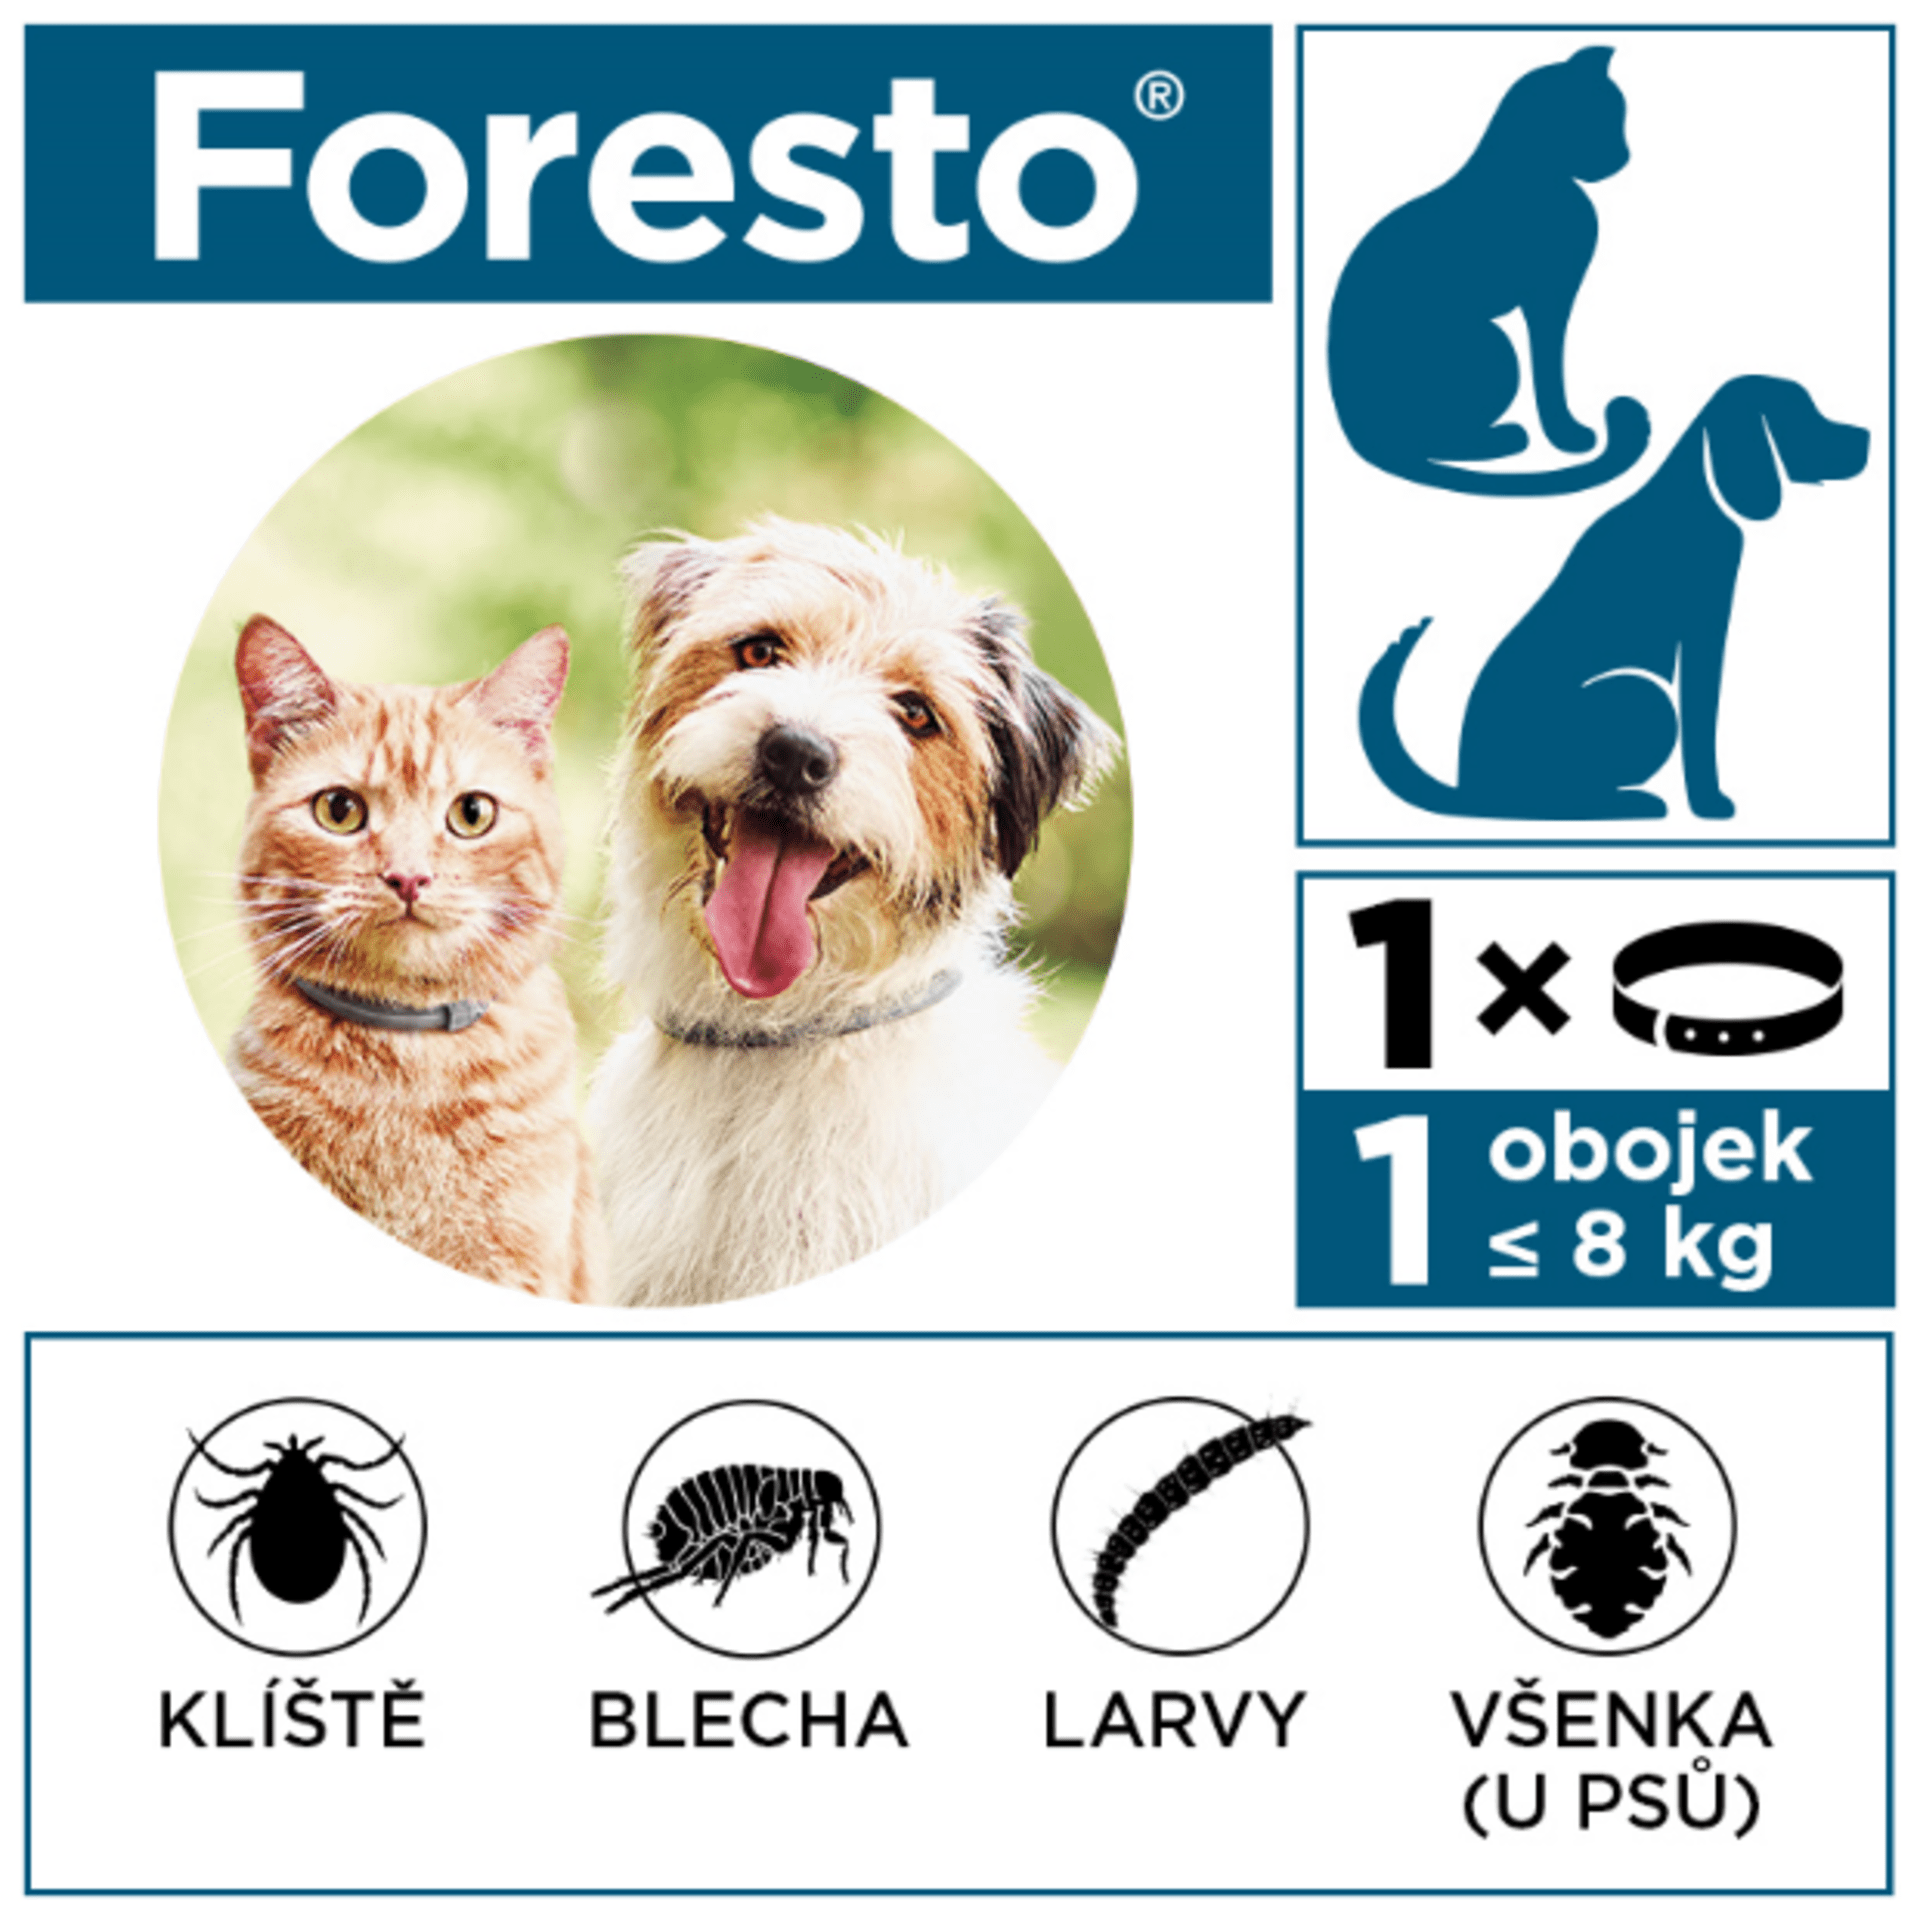 Foresto je veterinární léčivý přípravek. Před použitím pečlivě čtěte příbalovou informaci.